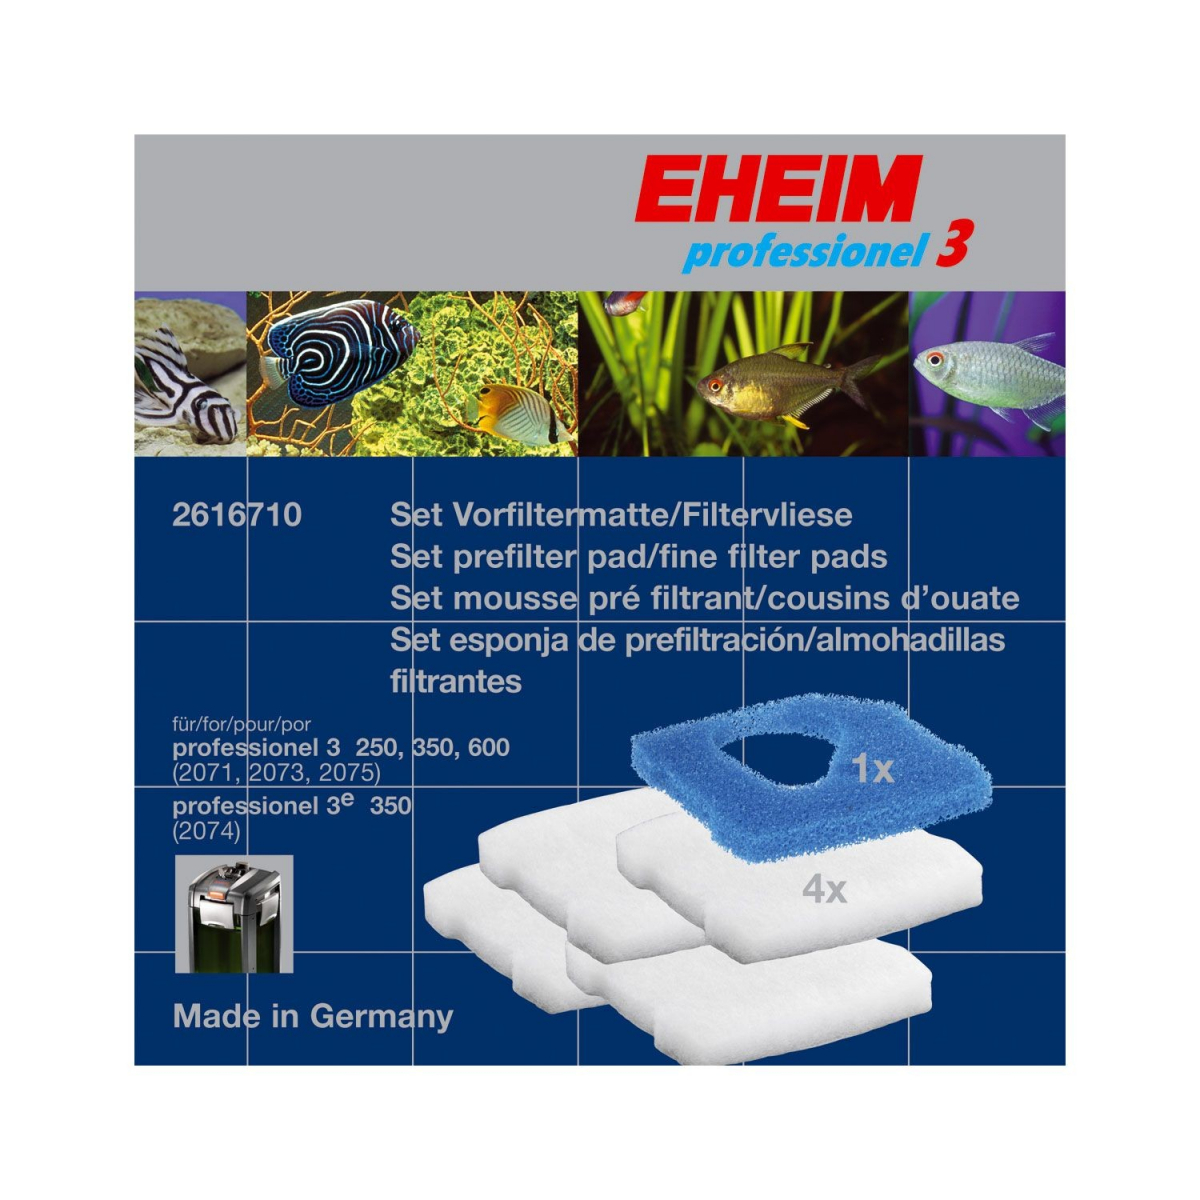 EHEIM - Filtermat + pad - eXperience 150/250/250T